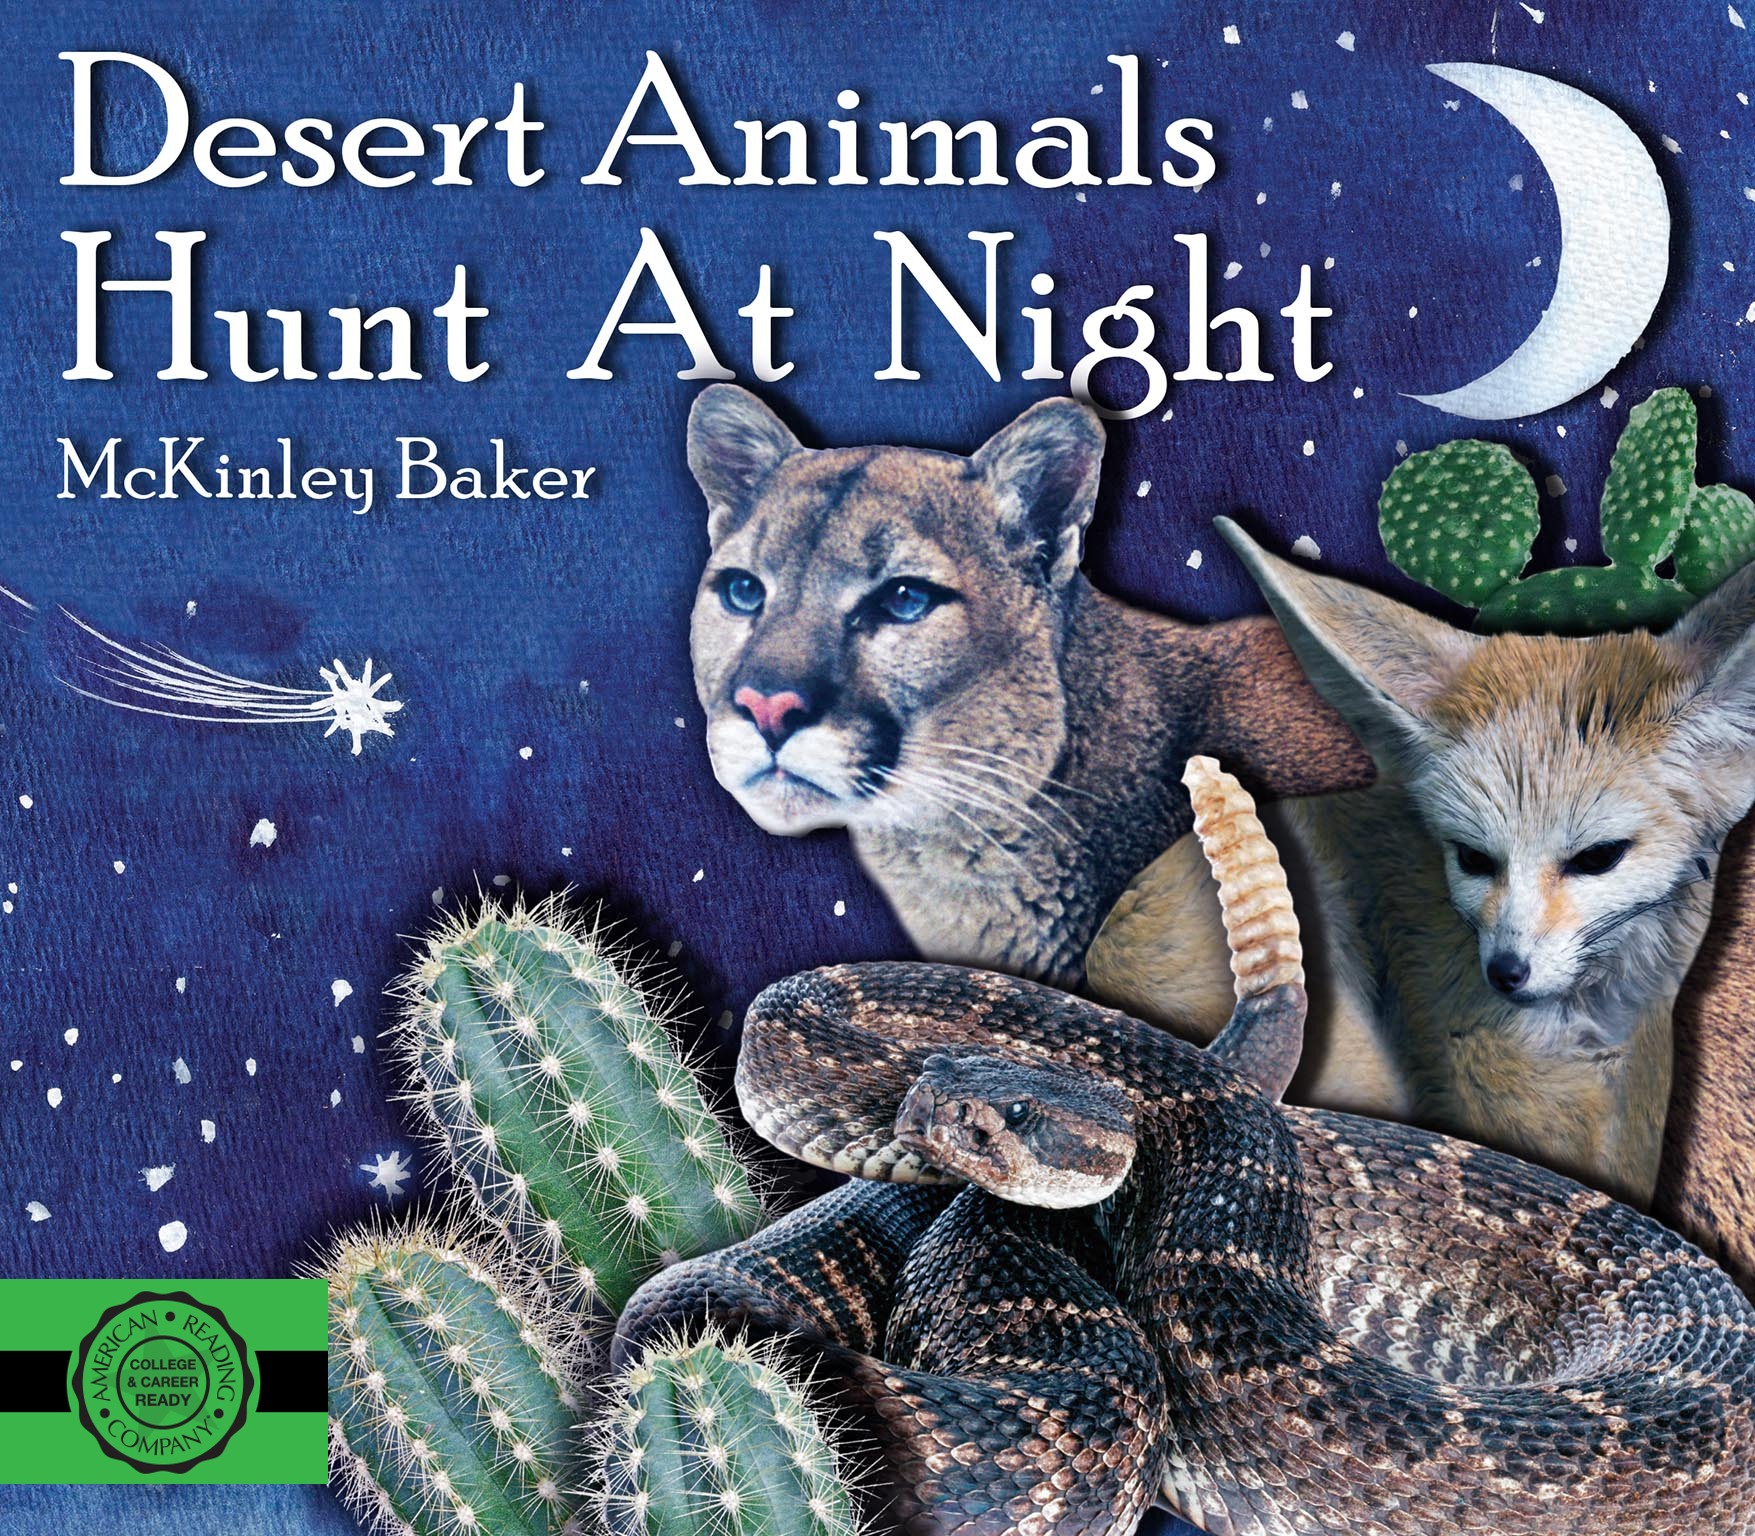 Desert Animals Hunt At Night by McKinley Baker (9781640532922)